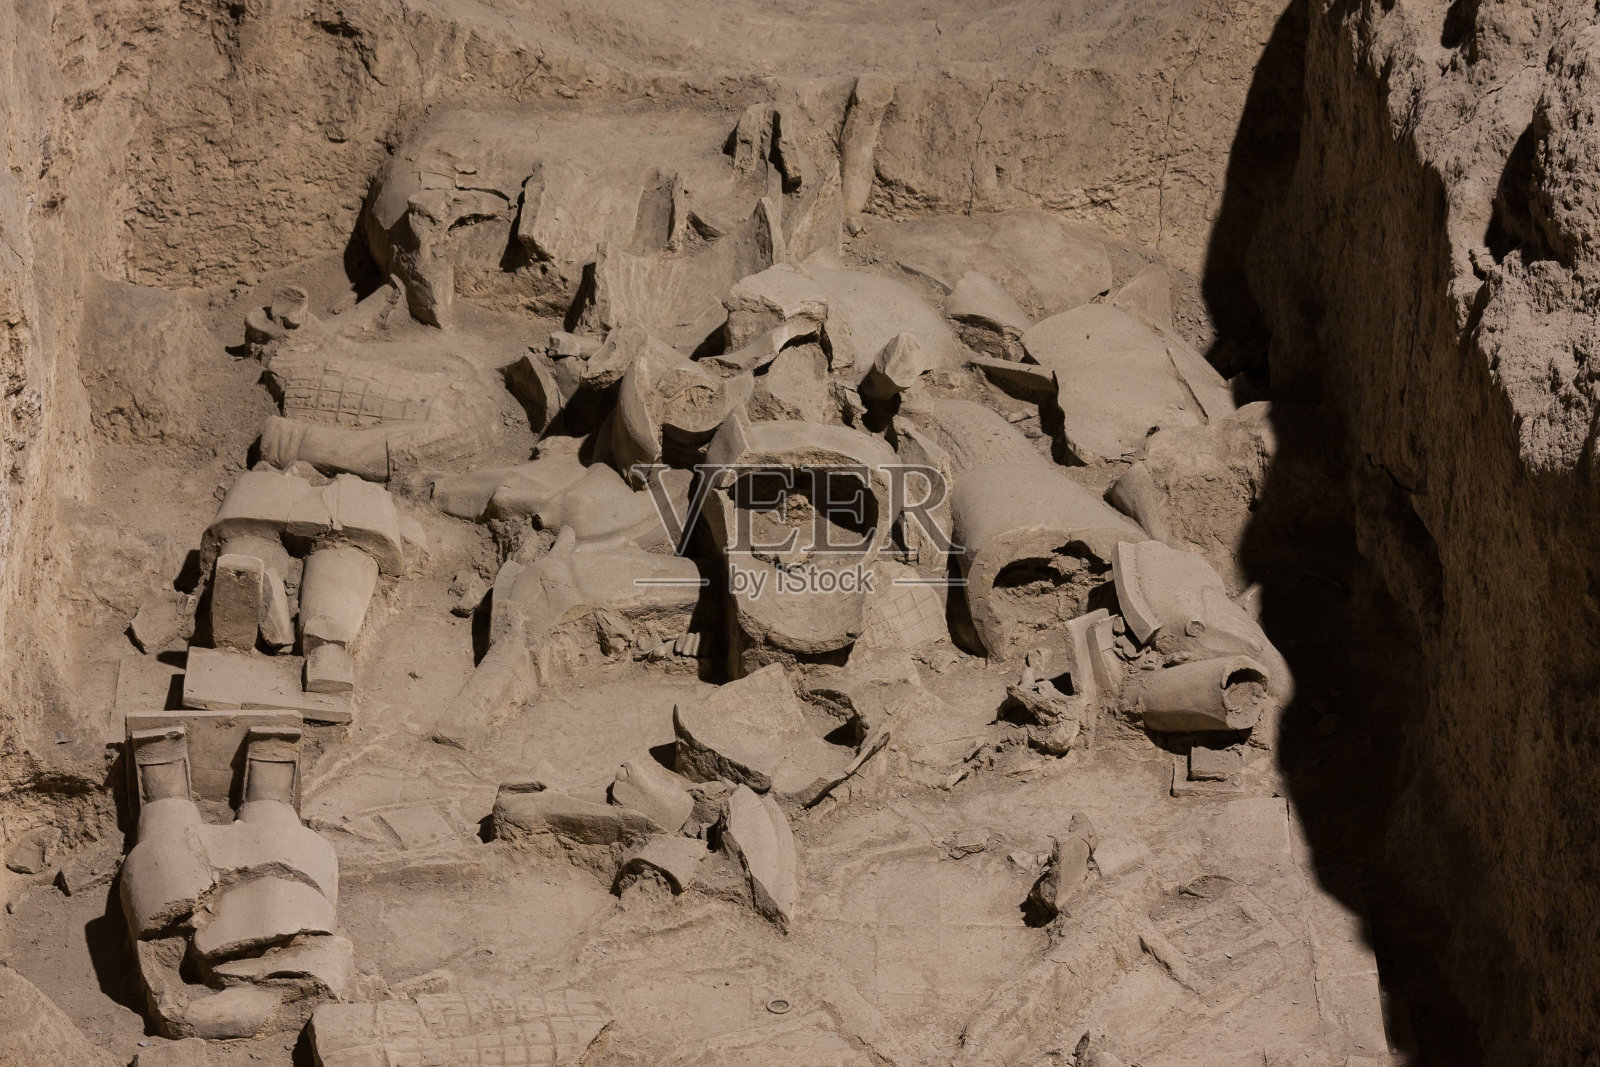 中国陕西省西安市秦始皇兵马俑遗址照片摄影图片